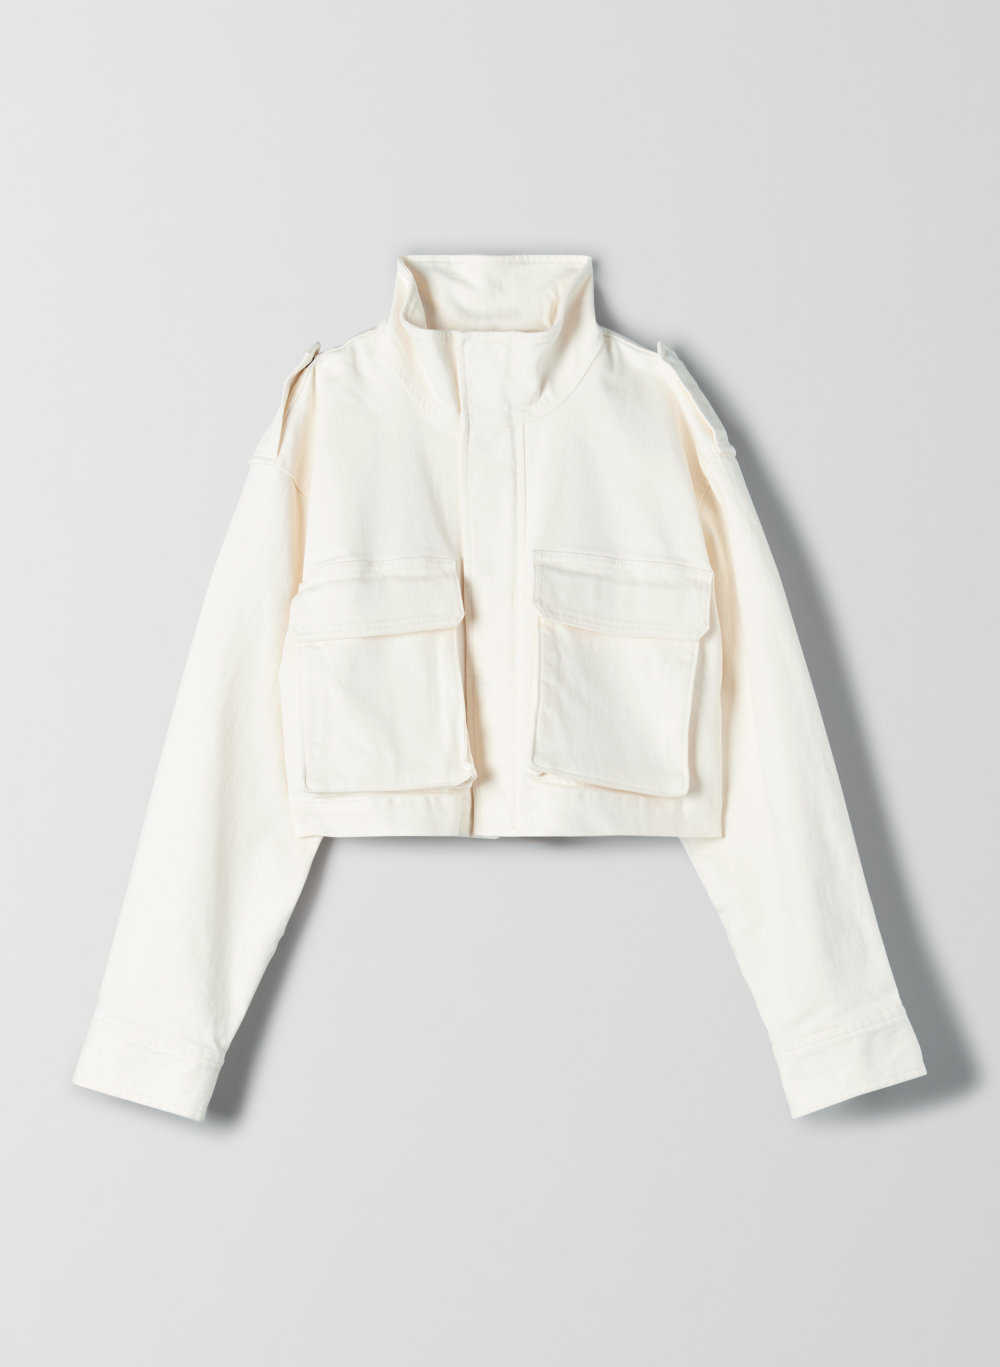 white workwear jacket